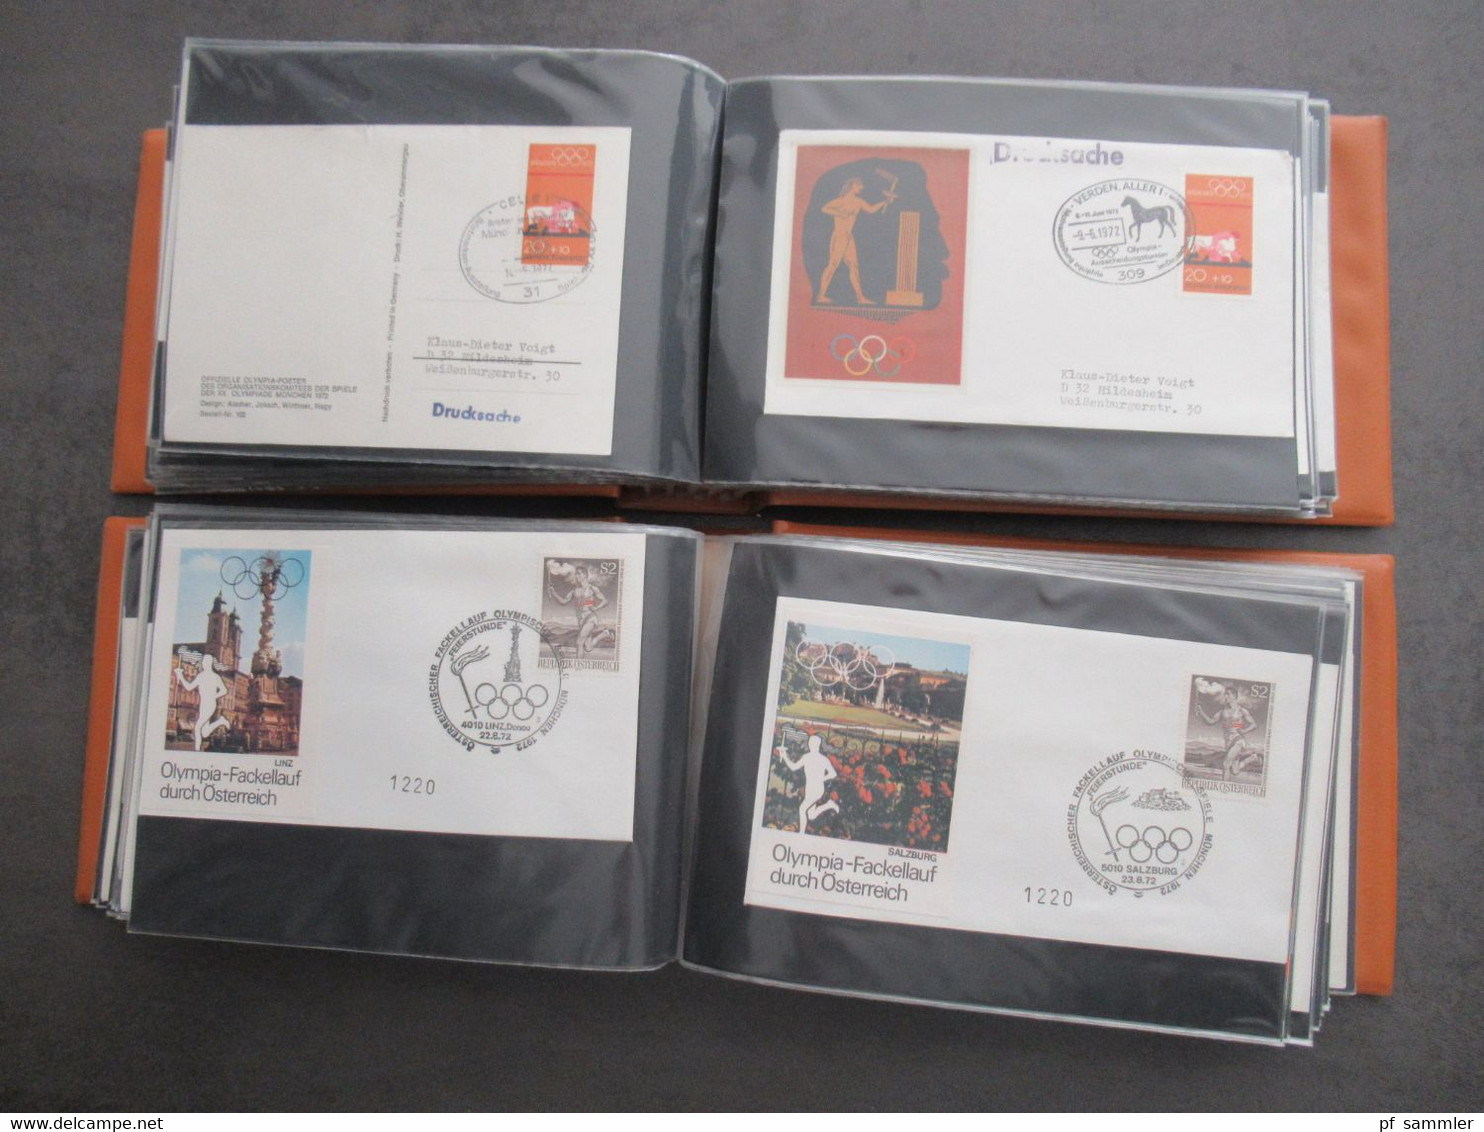 Olympiade 1972 (wenige andere!) über 200 Belege / PK / Sonderkarten in 2 sauberen belege Alben. Auch andere Länder!